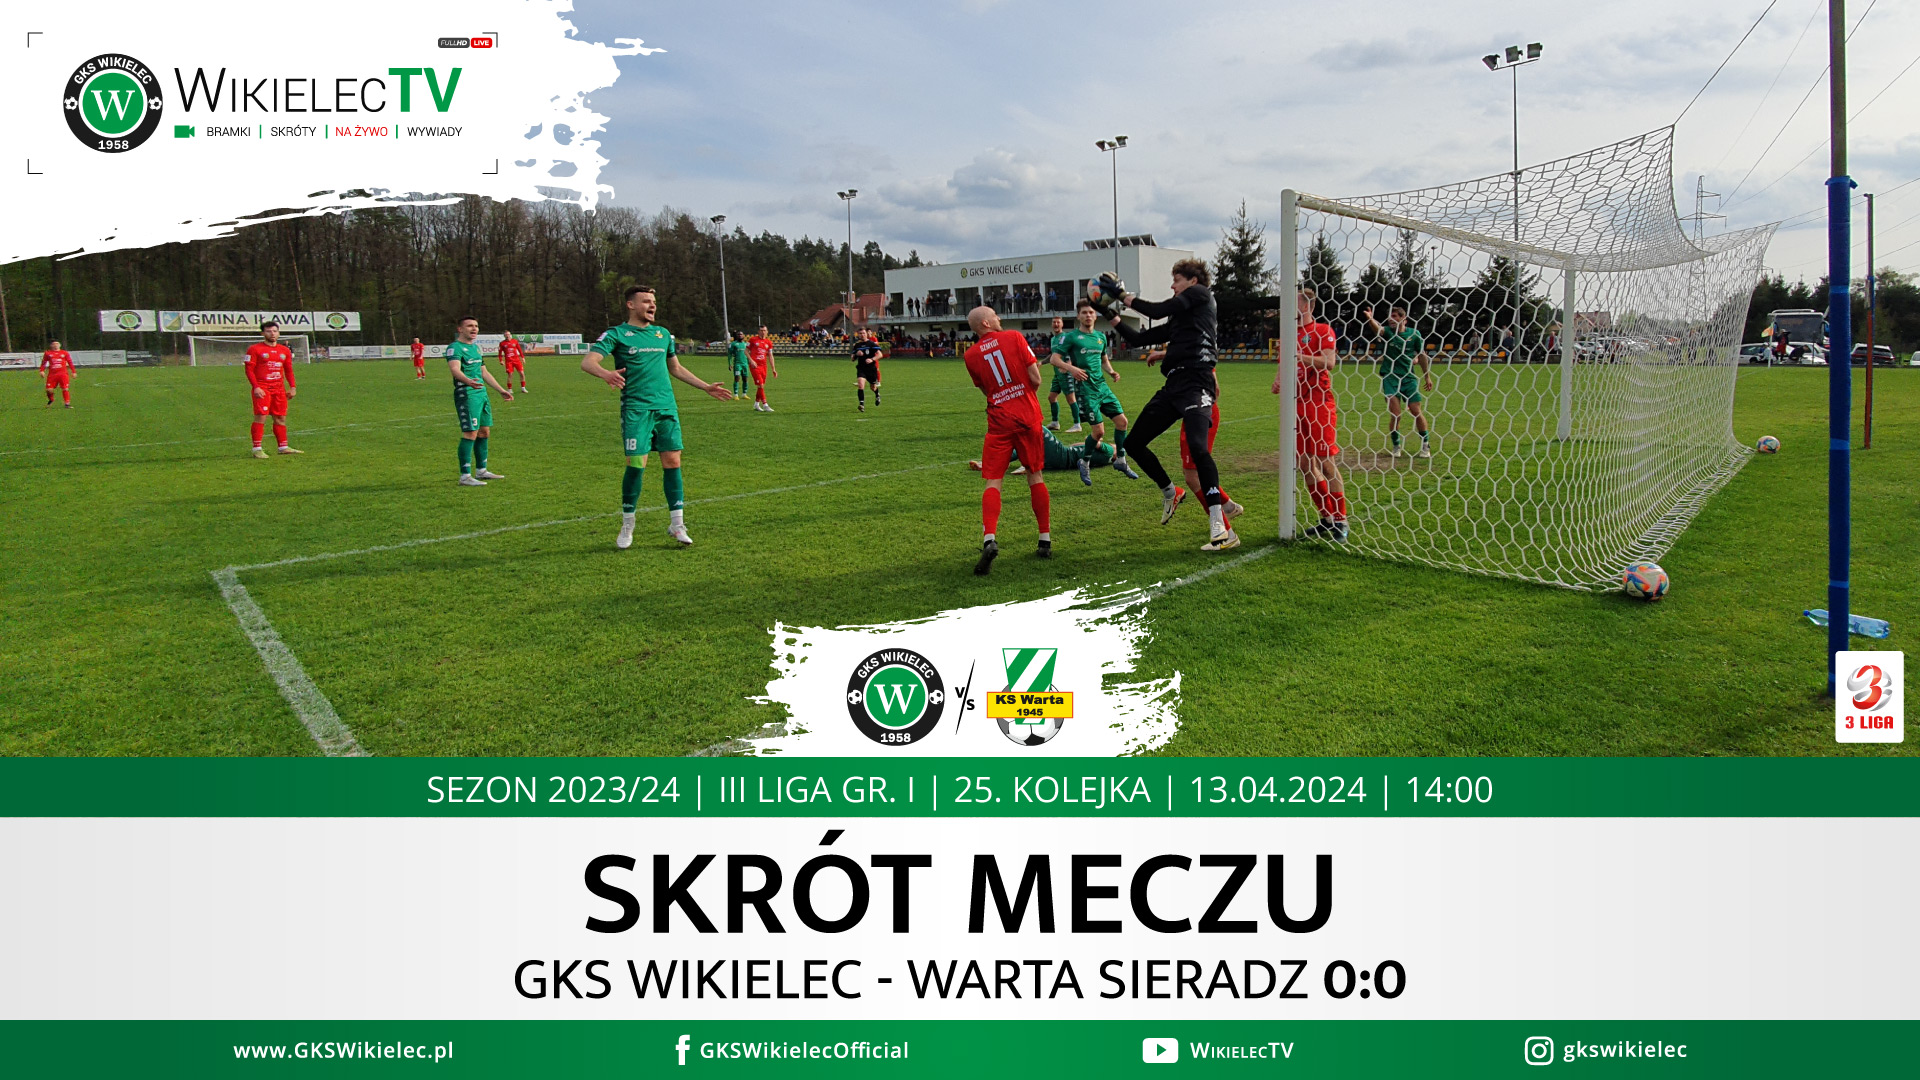 WikielecTV: Skrót meczu GKS Wikielec - Warta Sieradz 0:0